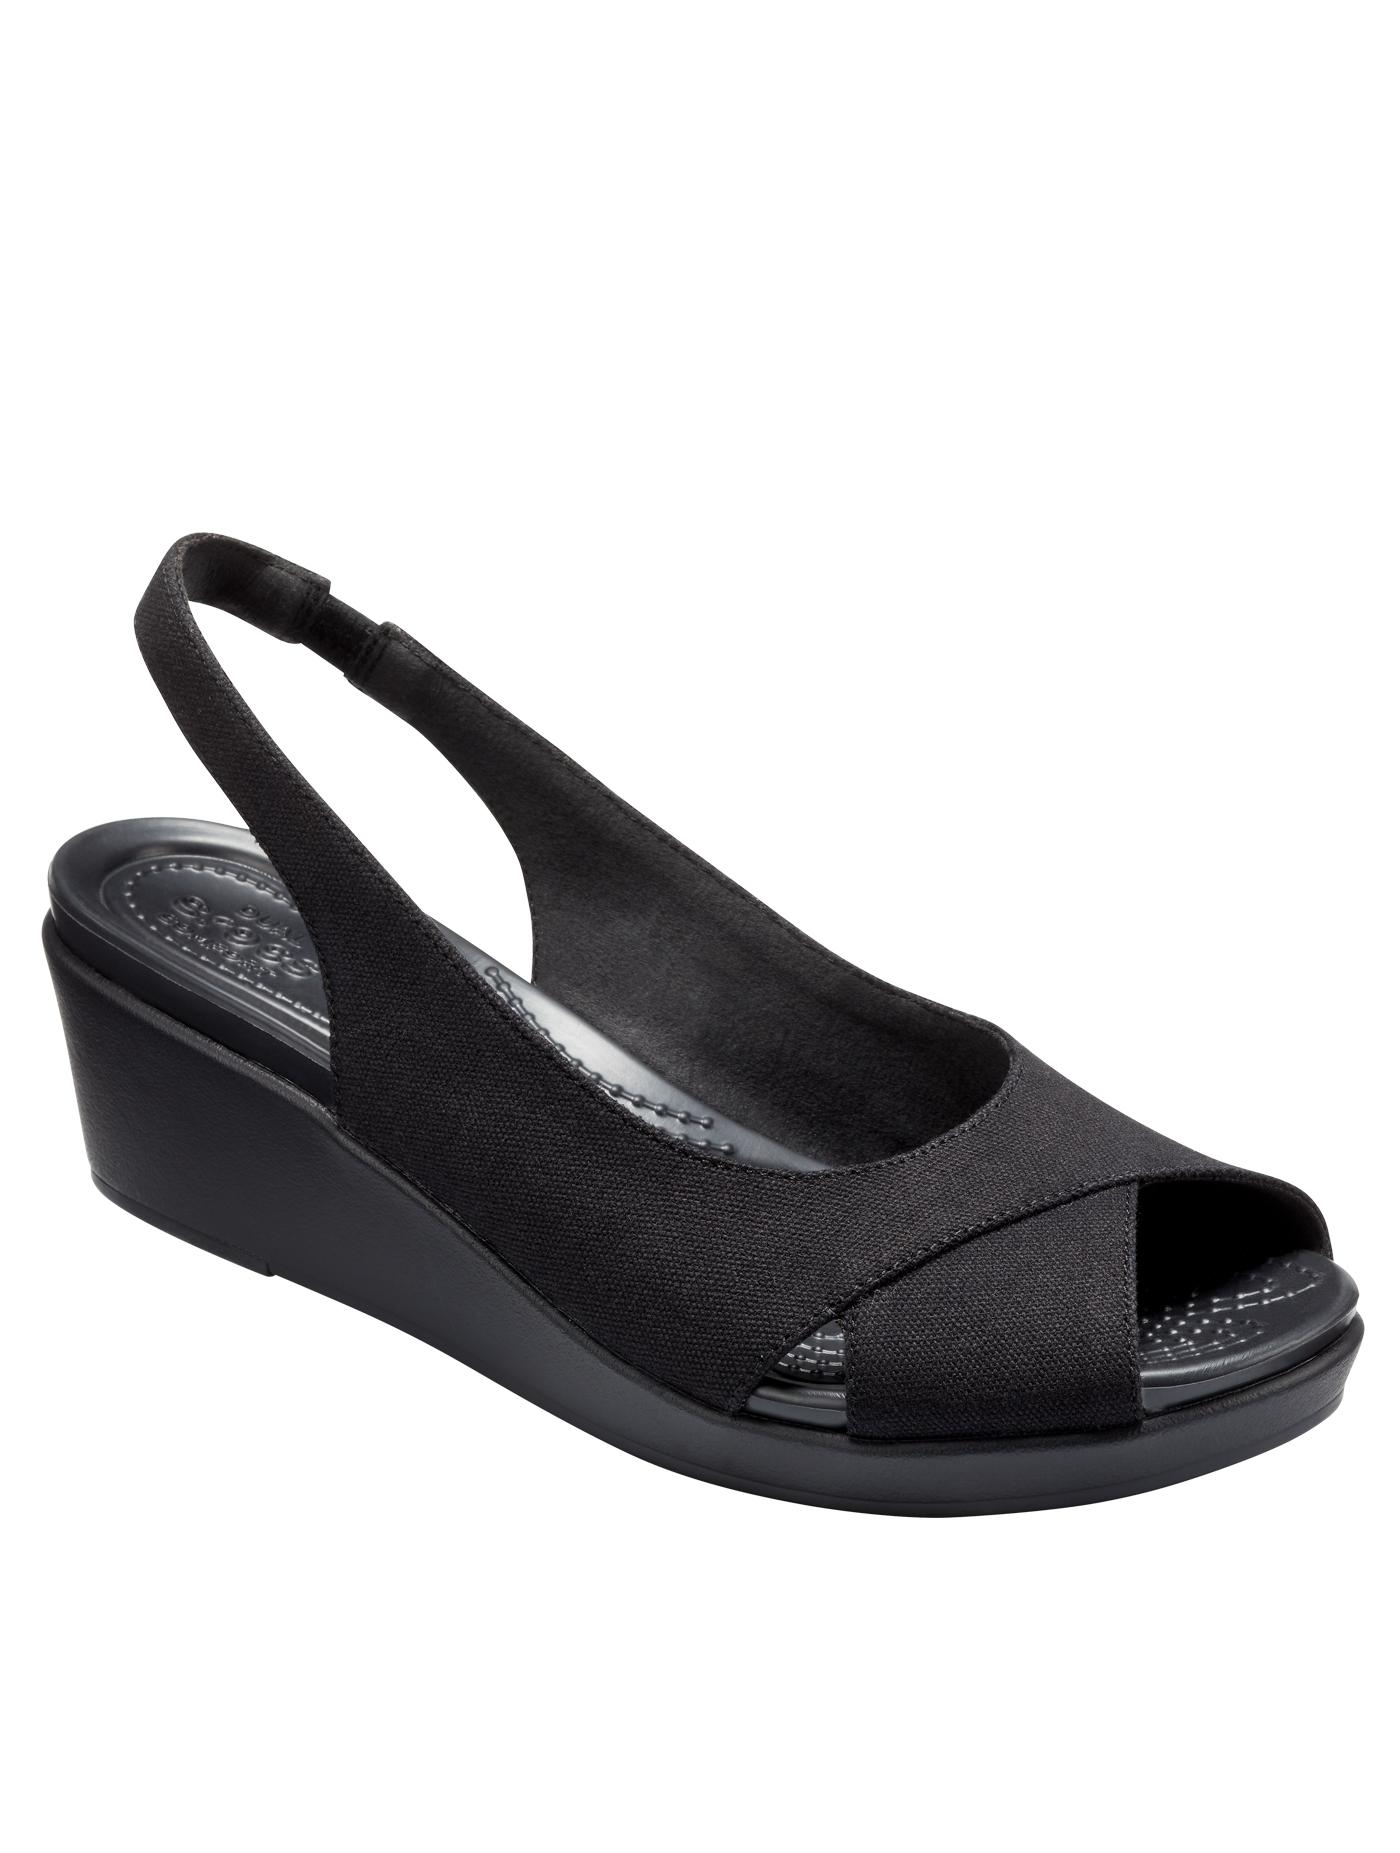 CROCS รองเท้าส้นสูงสำหรับผู้หญิง รุ่น Leigh Ann Slingback Wedge ไซส์ W5 สีดำ